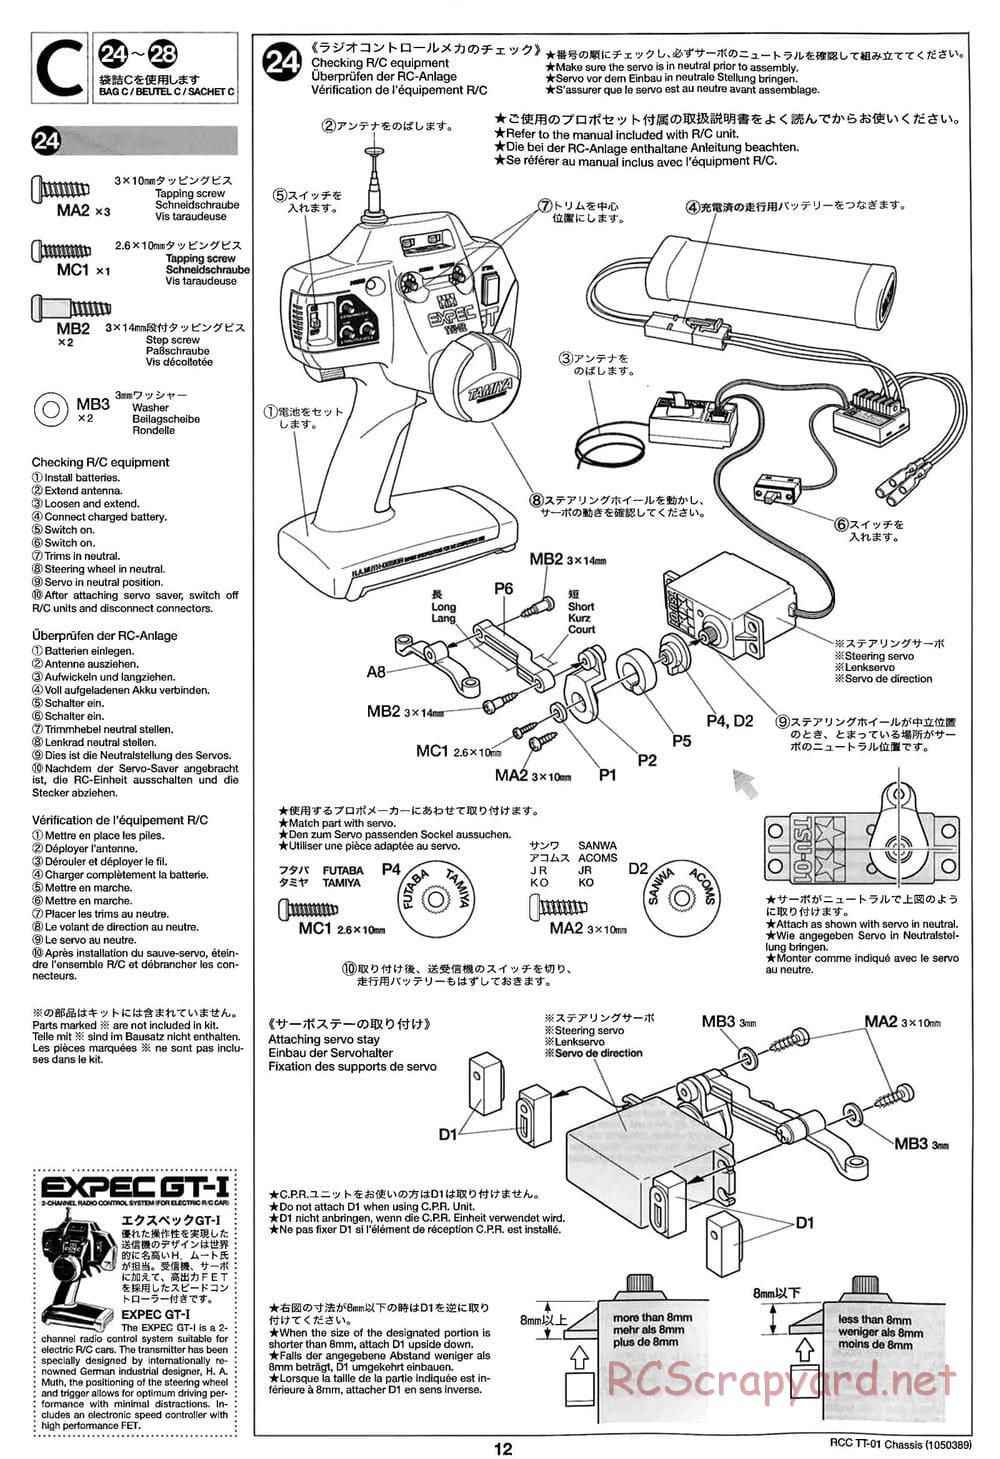 Tamiya - TT-01 Chassis - Manual - Page 12